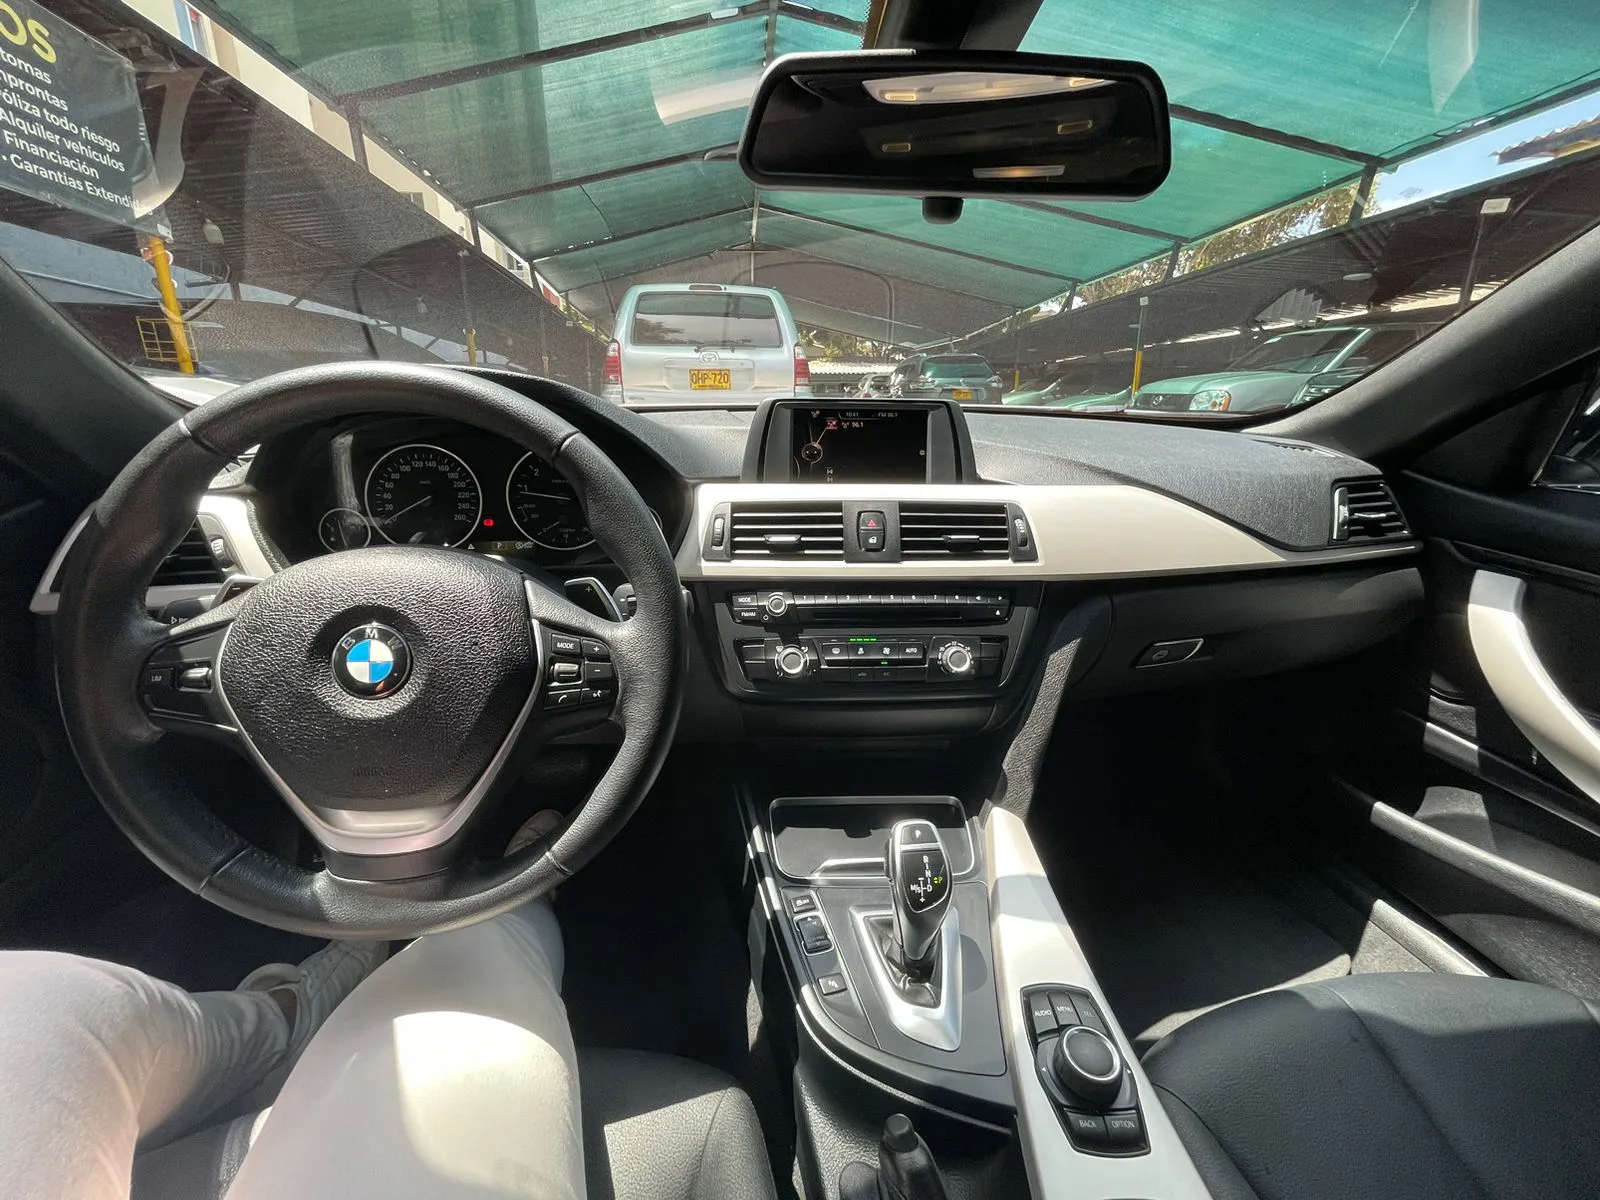 BMW CARROS 420i F33 Cabriolet Sportline 2016